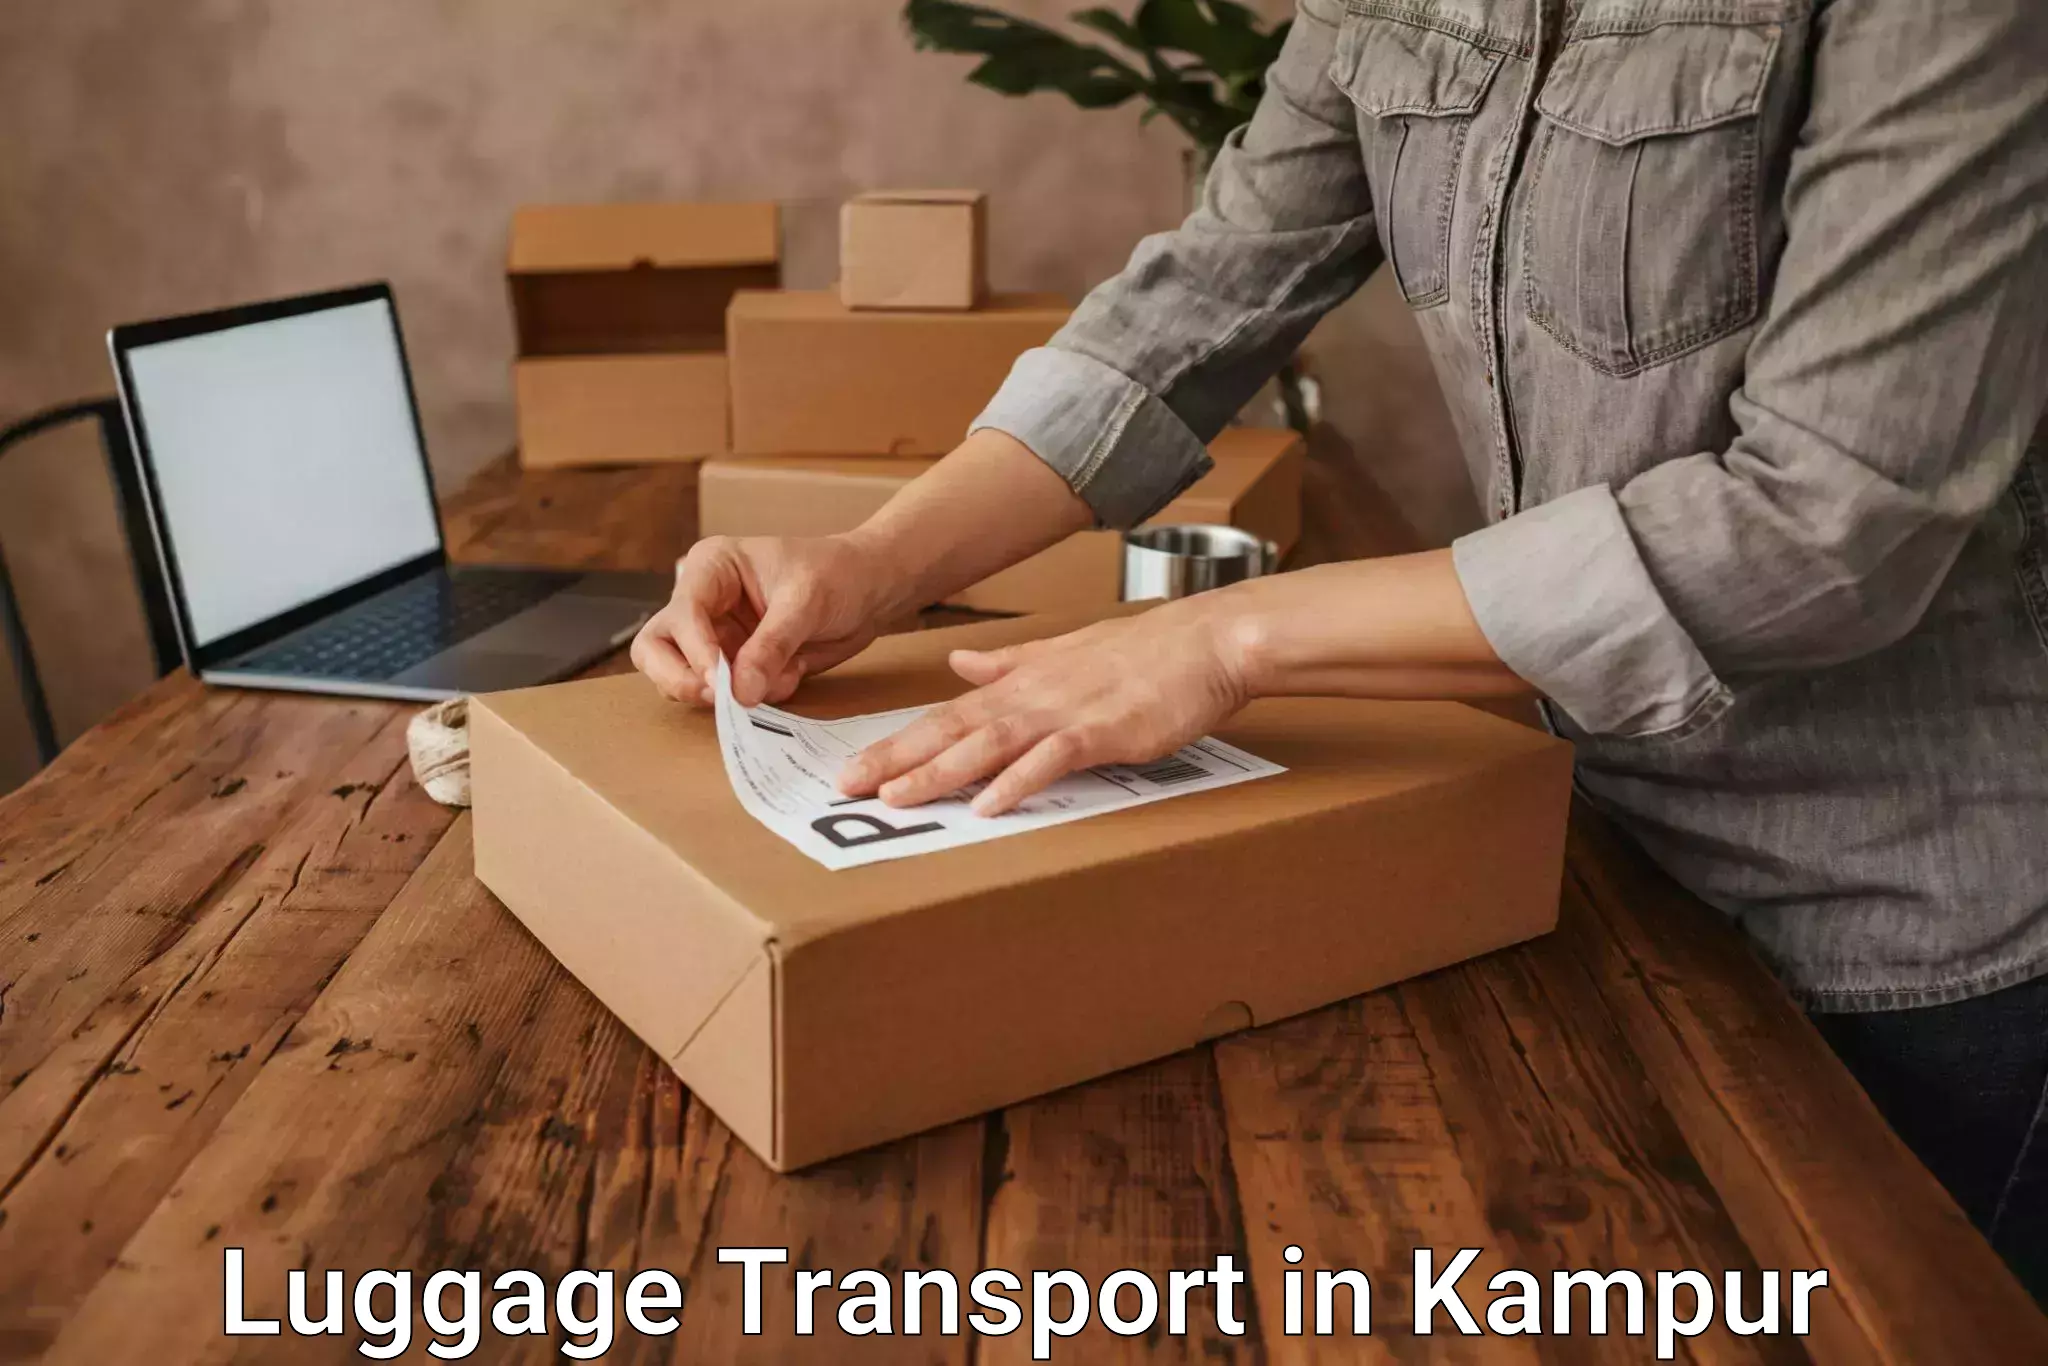 Baggage transport network in Kampur